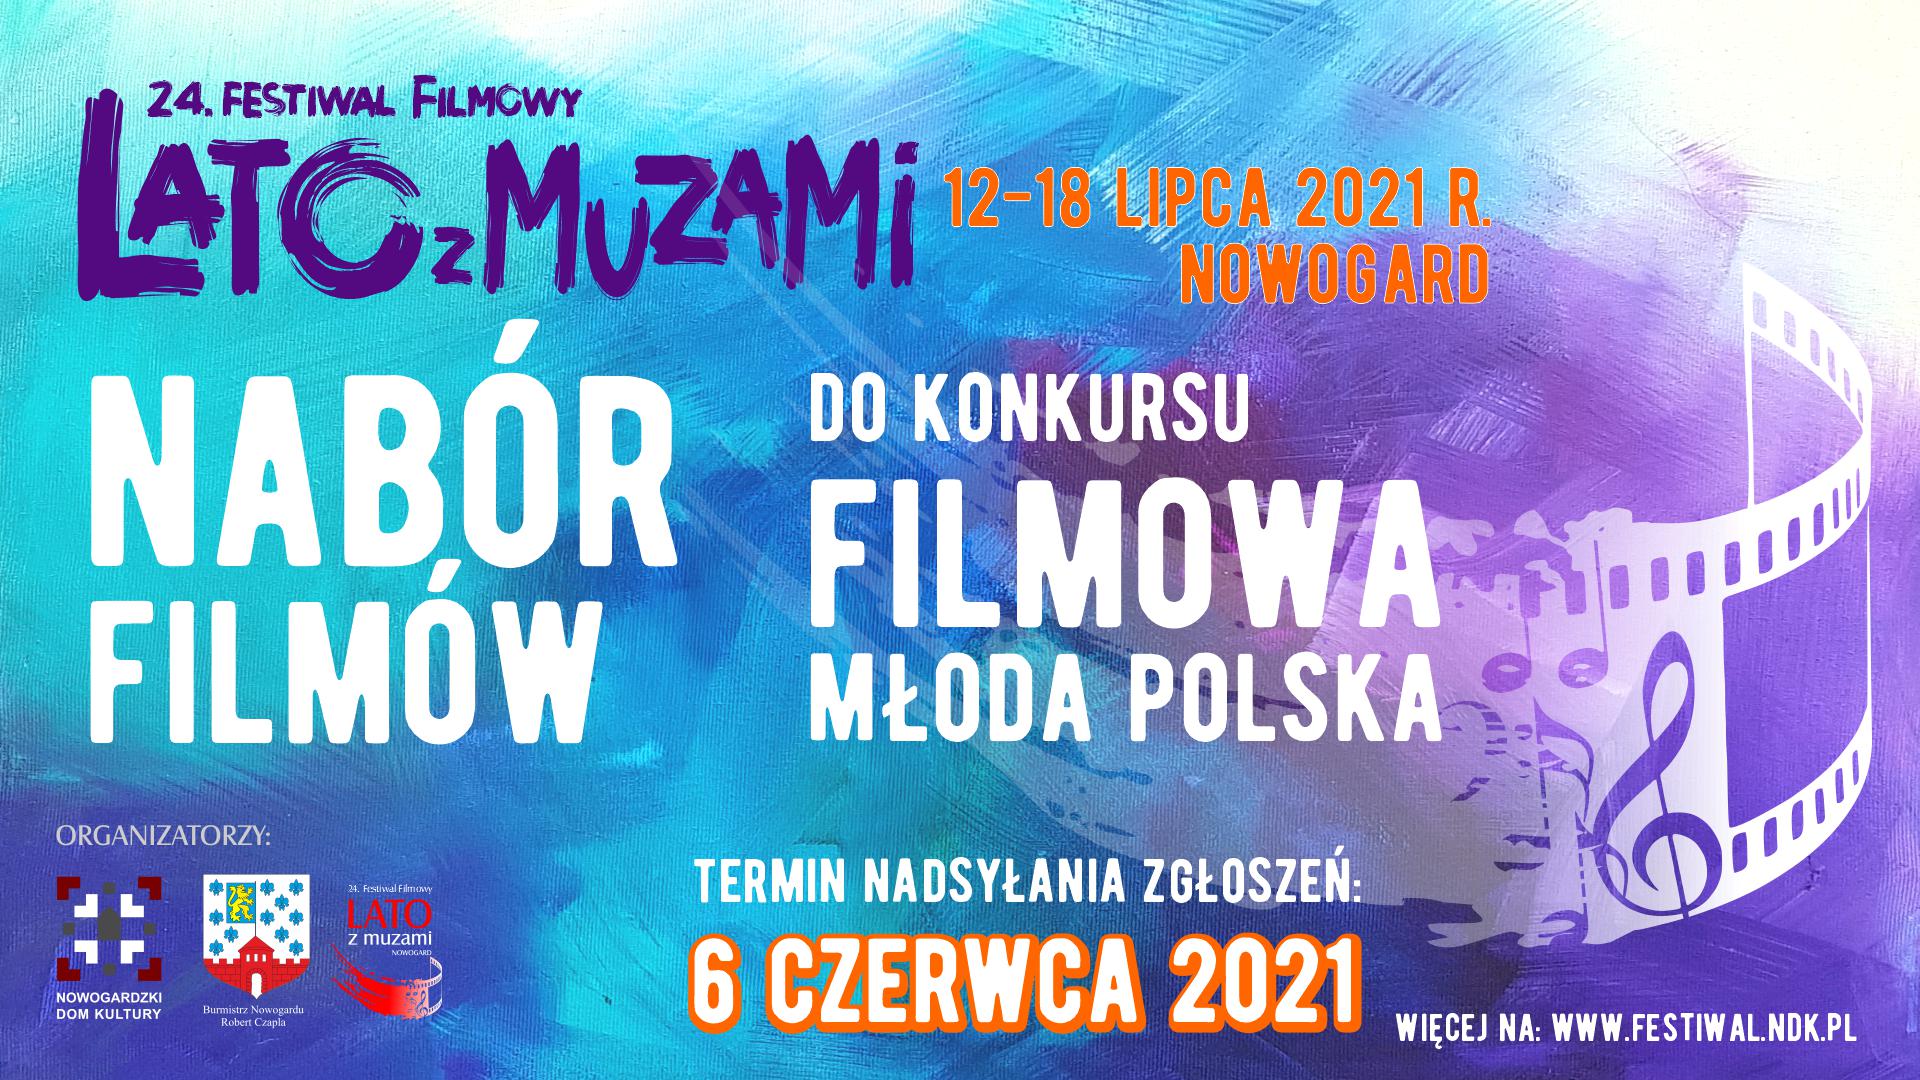 LzM | Nabór filmów do Konkursu Filmowa Młoda Polska 2021